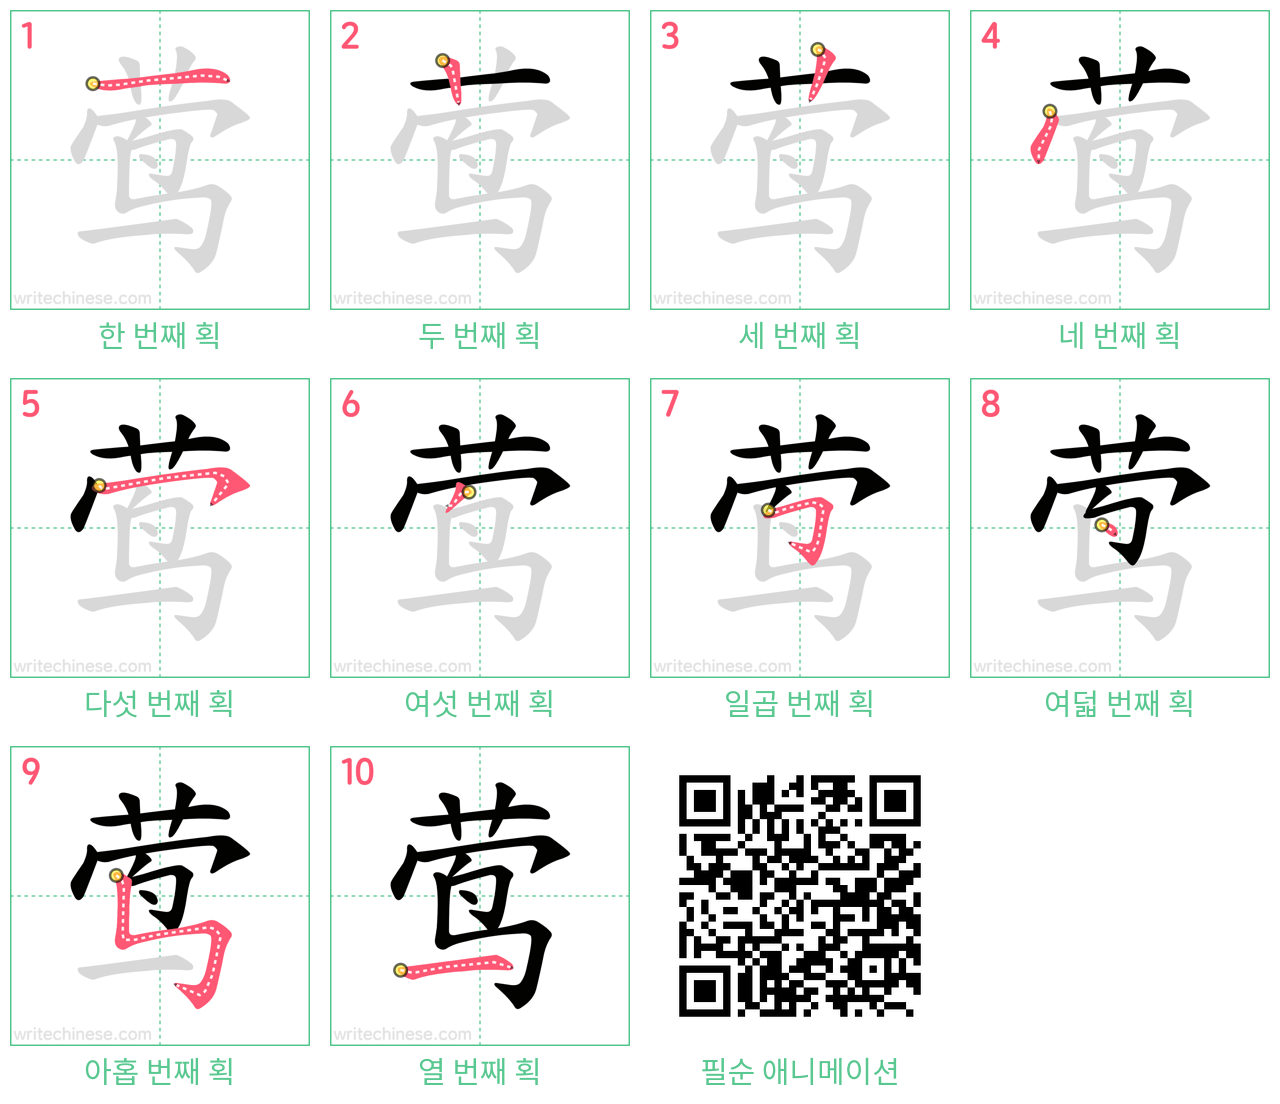 莺 step-by-step stroke order diagrams